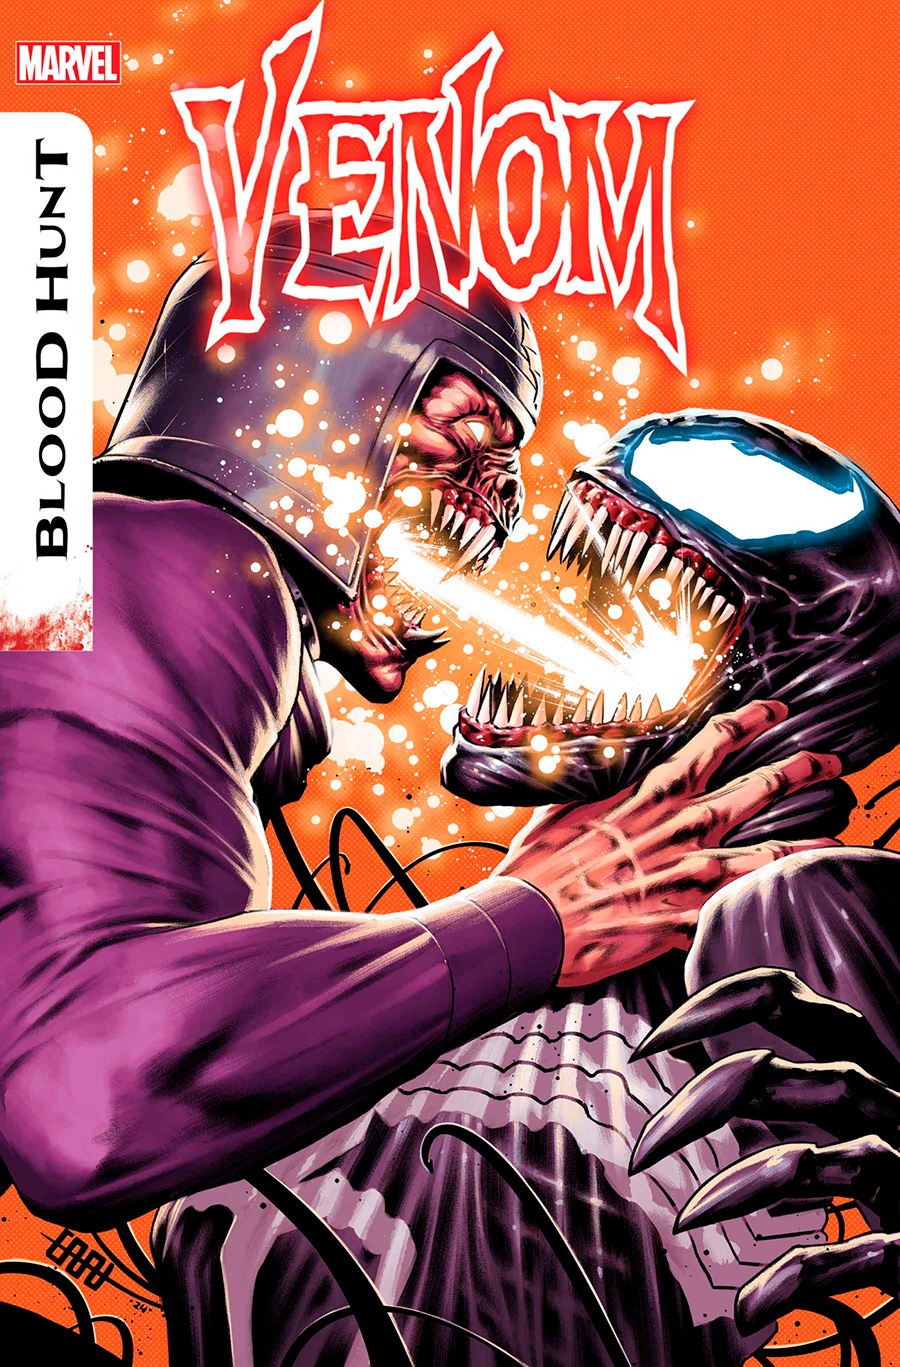 Venom Vol 5 #34 Cover A Regular CAFU Cover (Blood Hunt Tie-In)